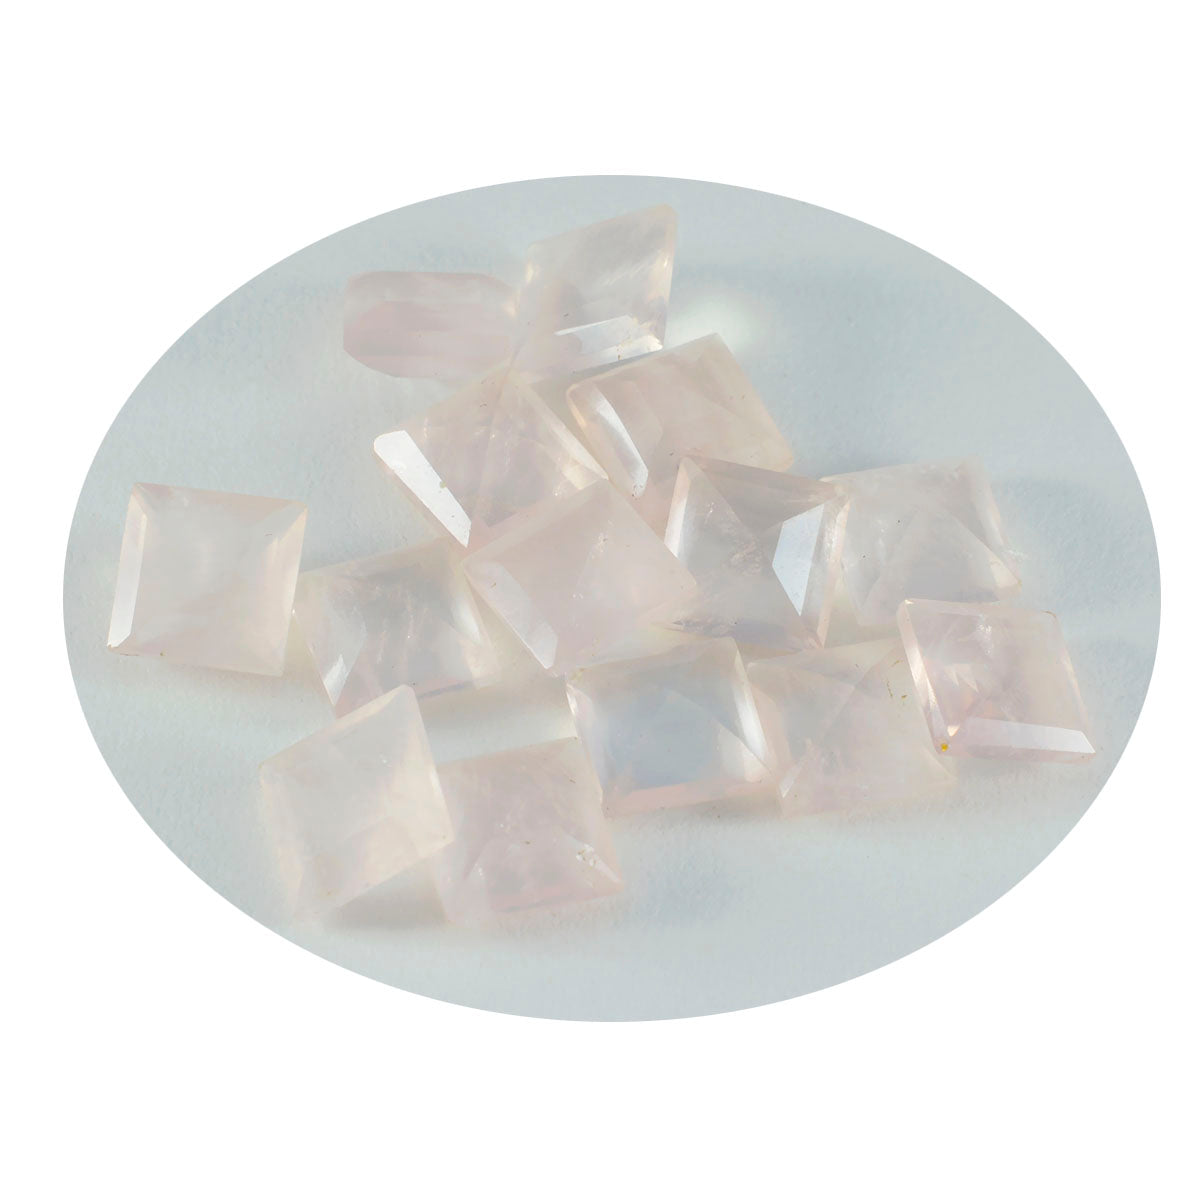 riyogems 1pc quartz rose à facettes 5x5 mm forme carrée qualité étonnante pierre précieuse en vrac